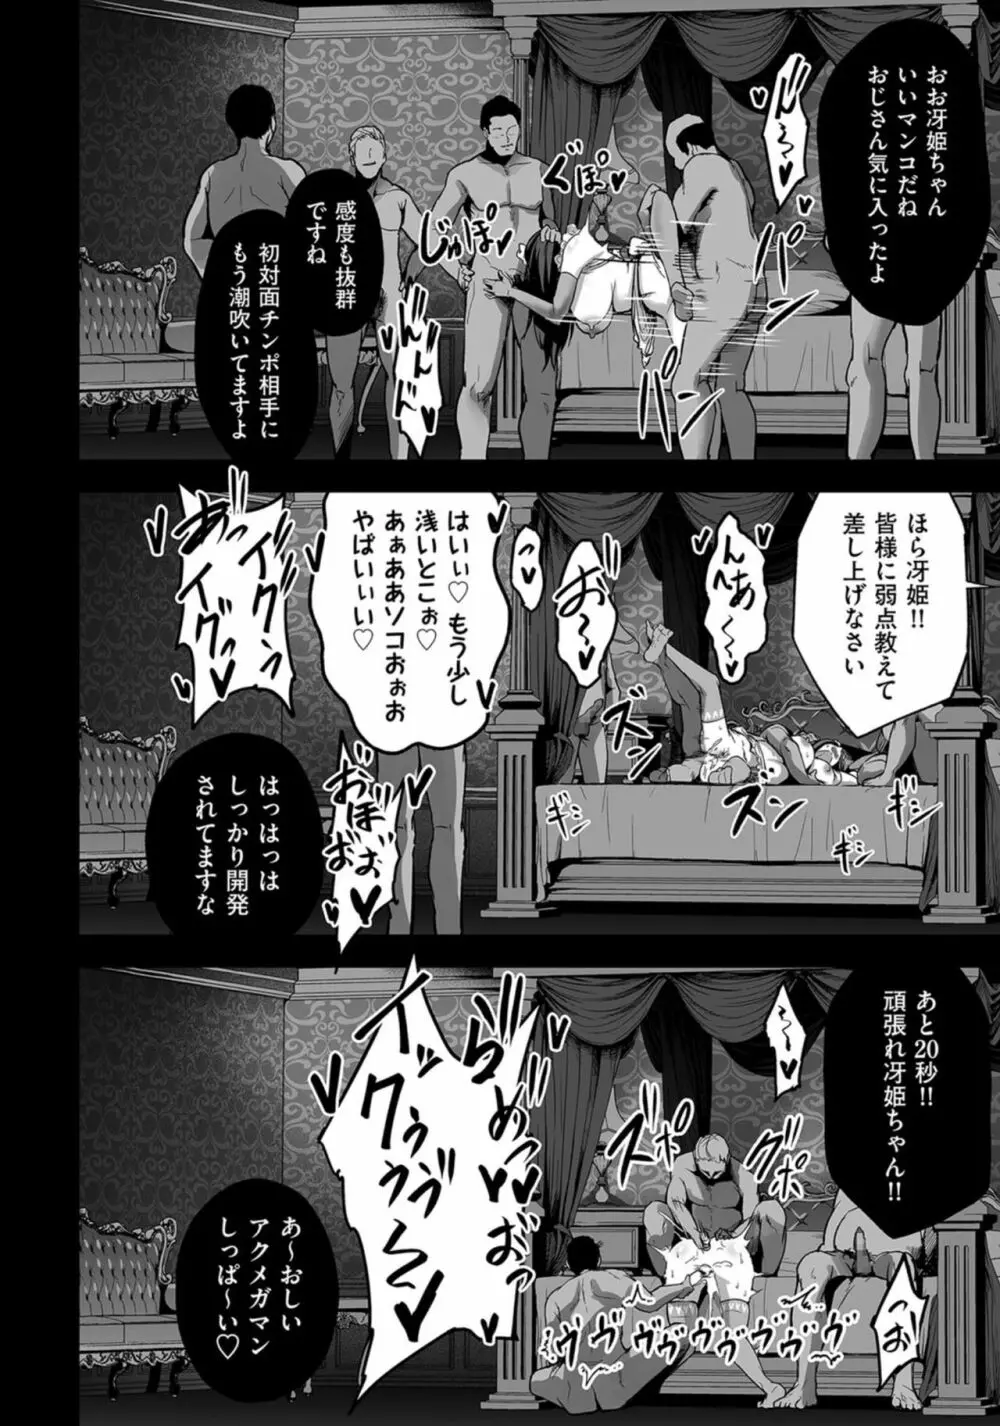 嬌声調教合宿 -現役JDモデル 大城冴姫- 30ページ